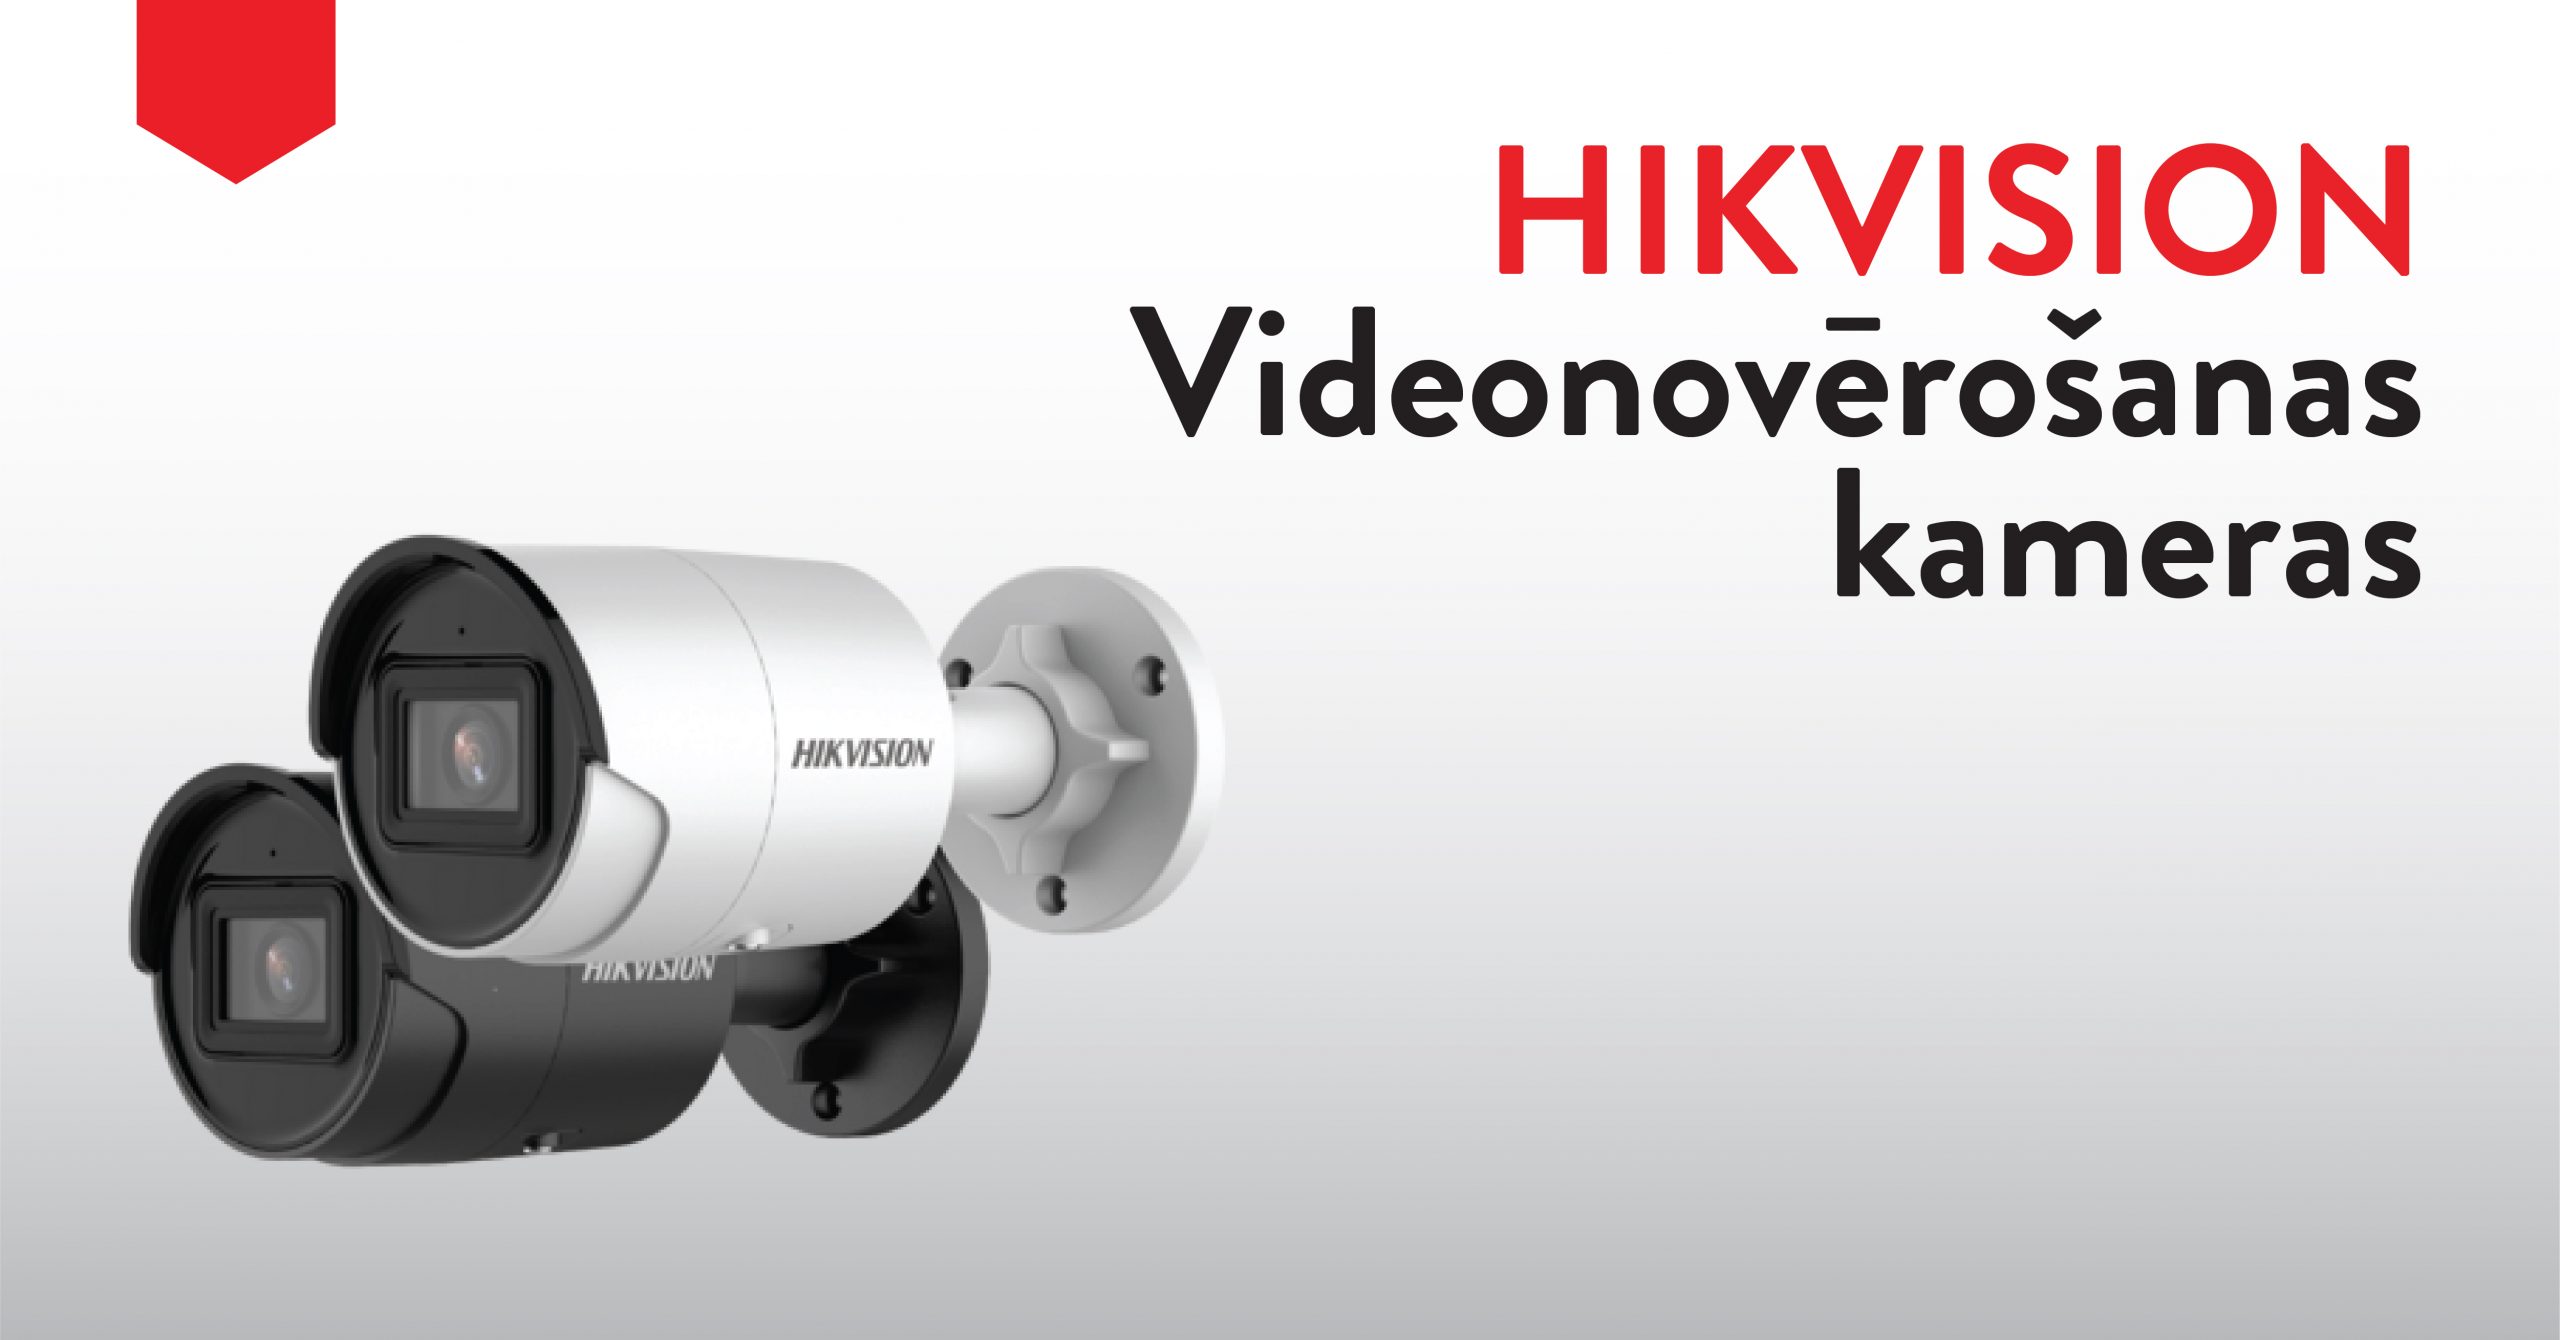 InRex piedavajums_Hikvision videonoverosanas kameras